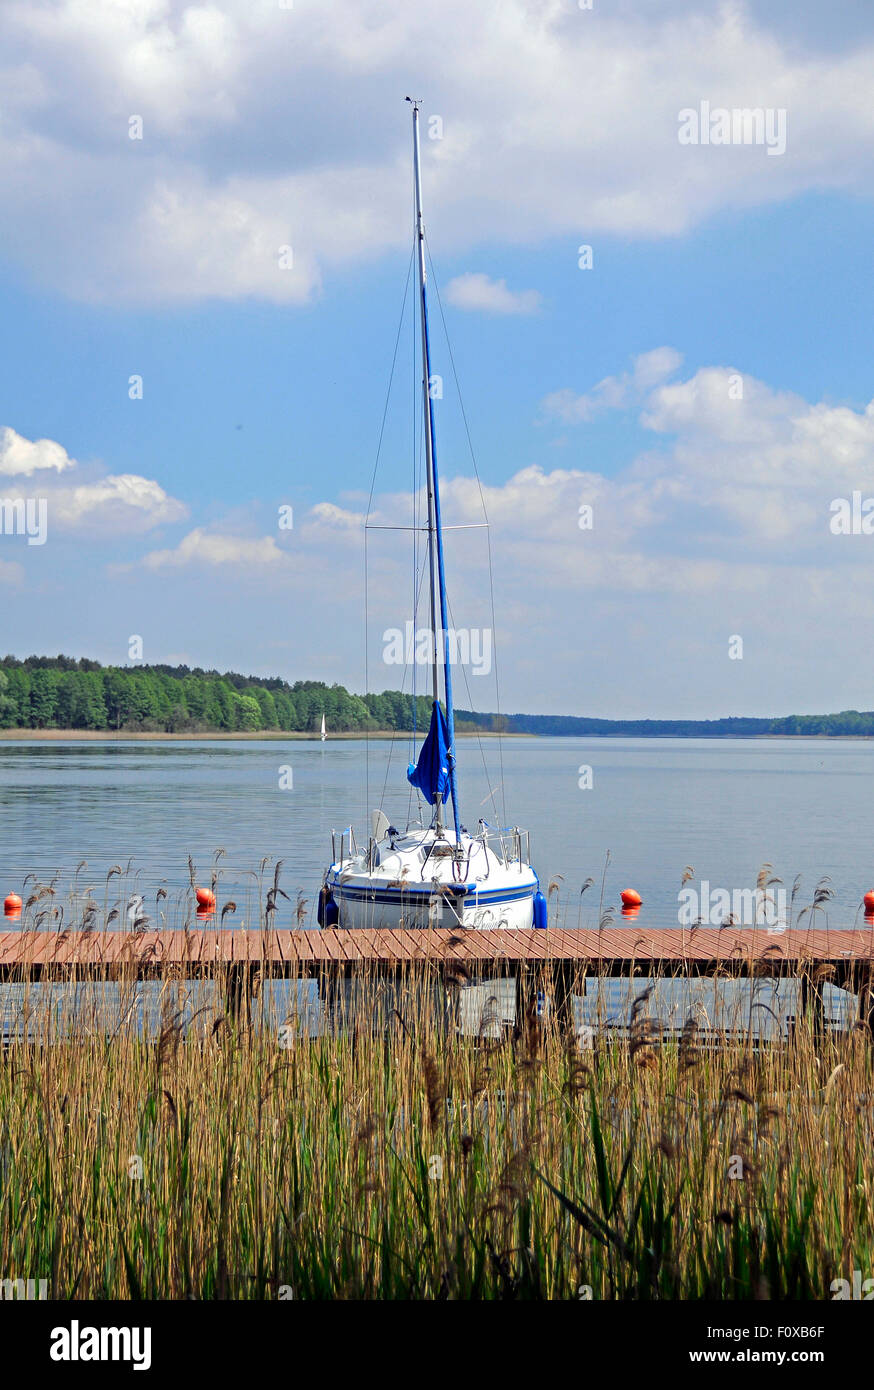 Barca a vela ormeggiata nel piccolo porticciolo sul lago Powidz, Polonia Foto Stock